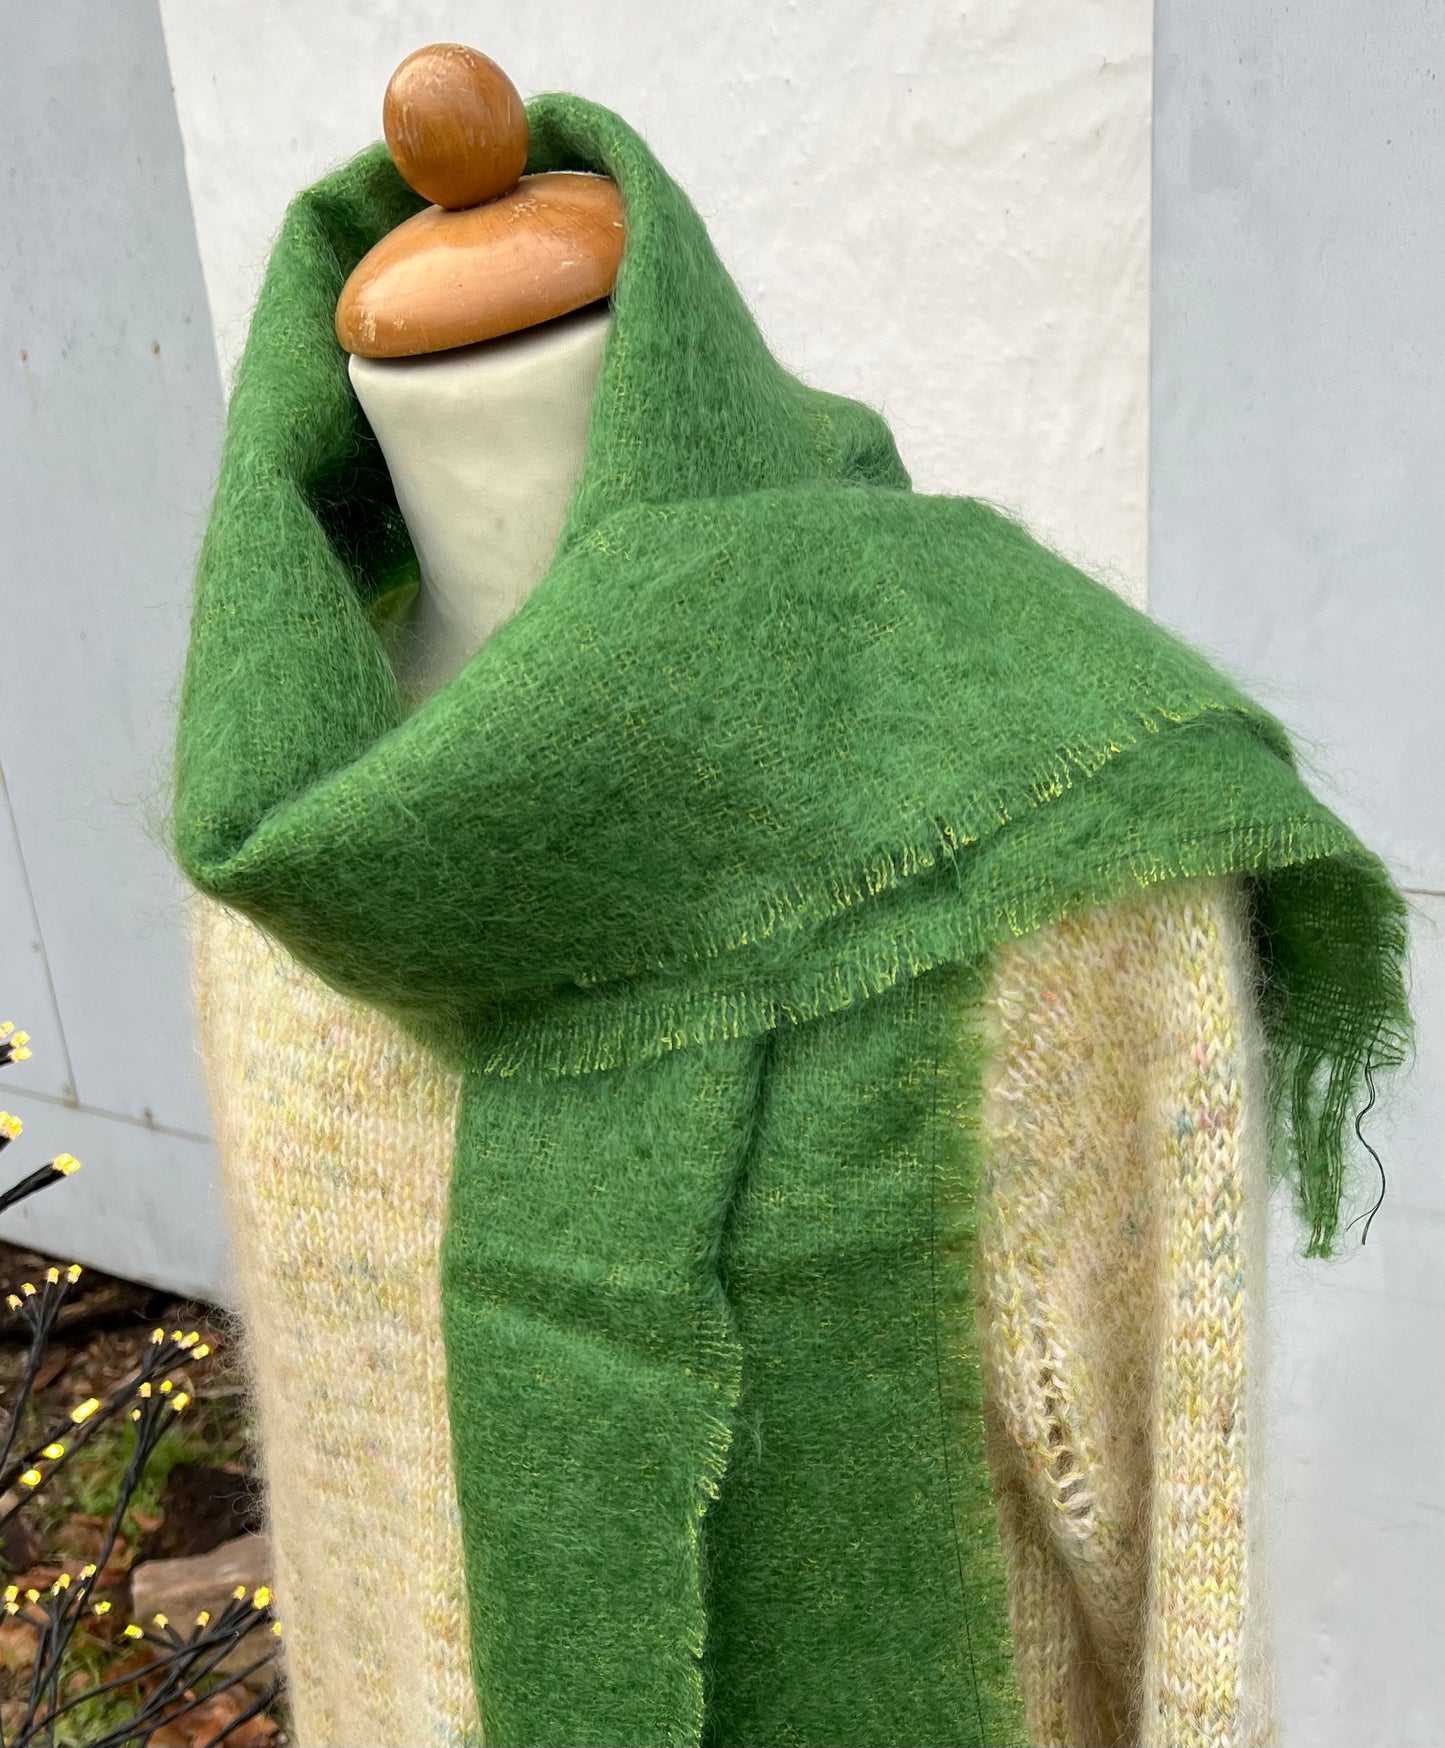 Vævet halstørklæde grøn